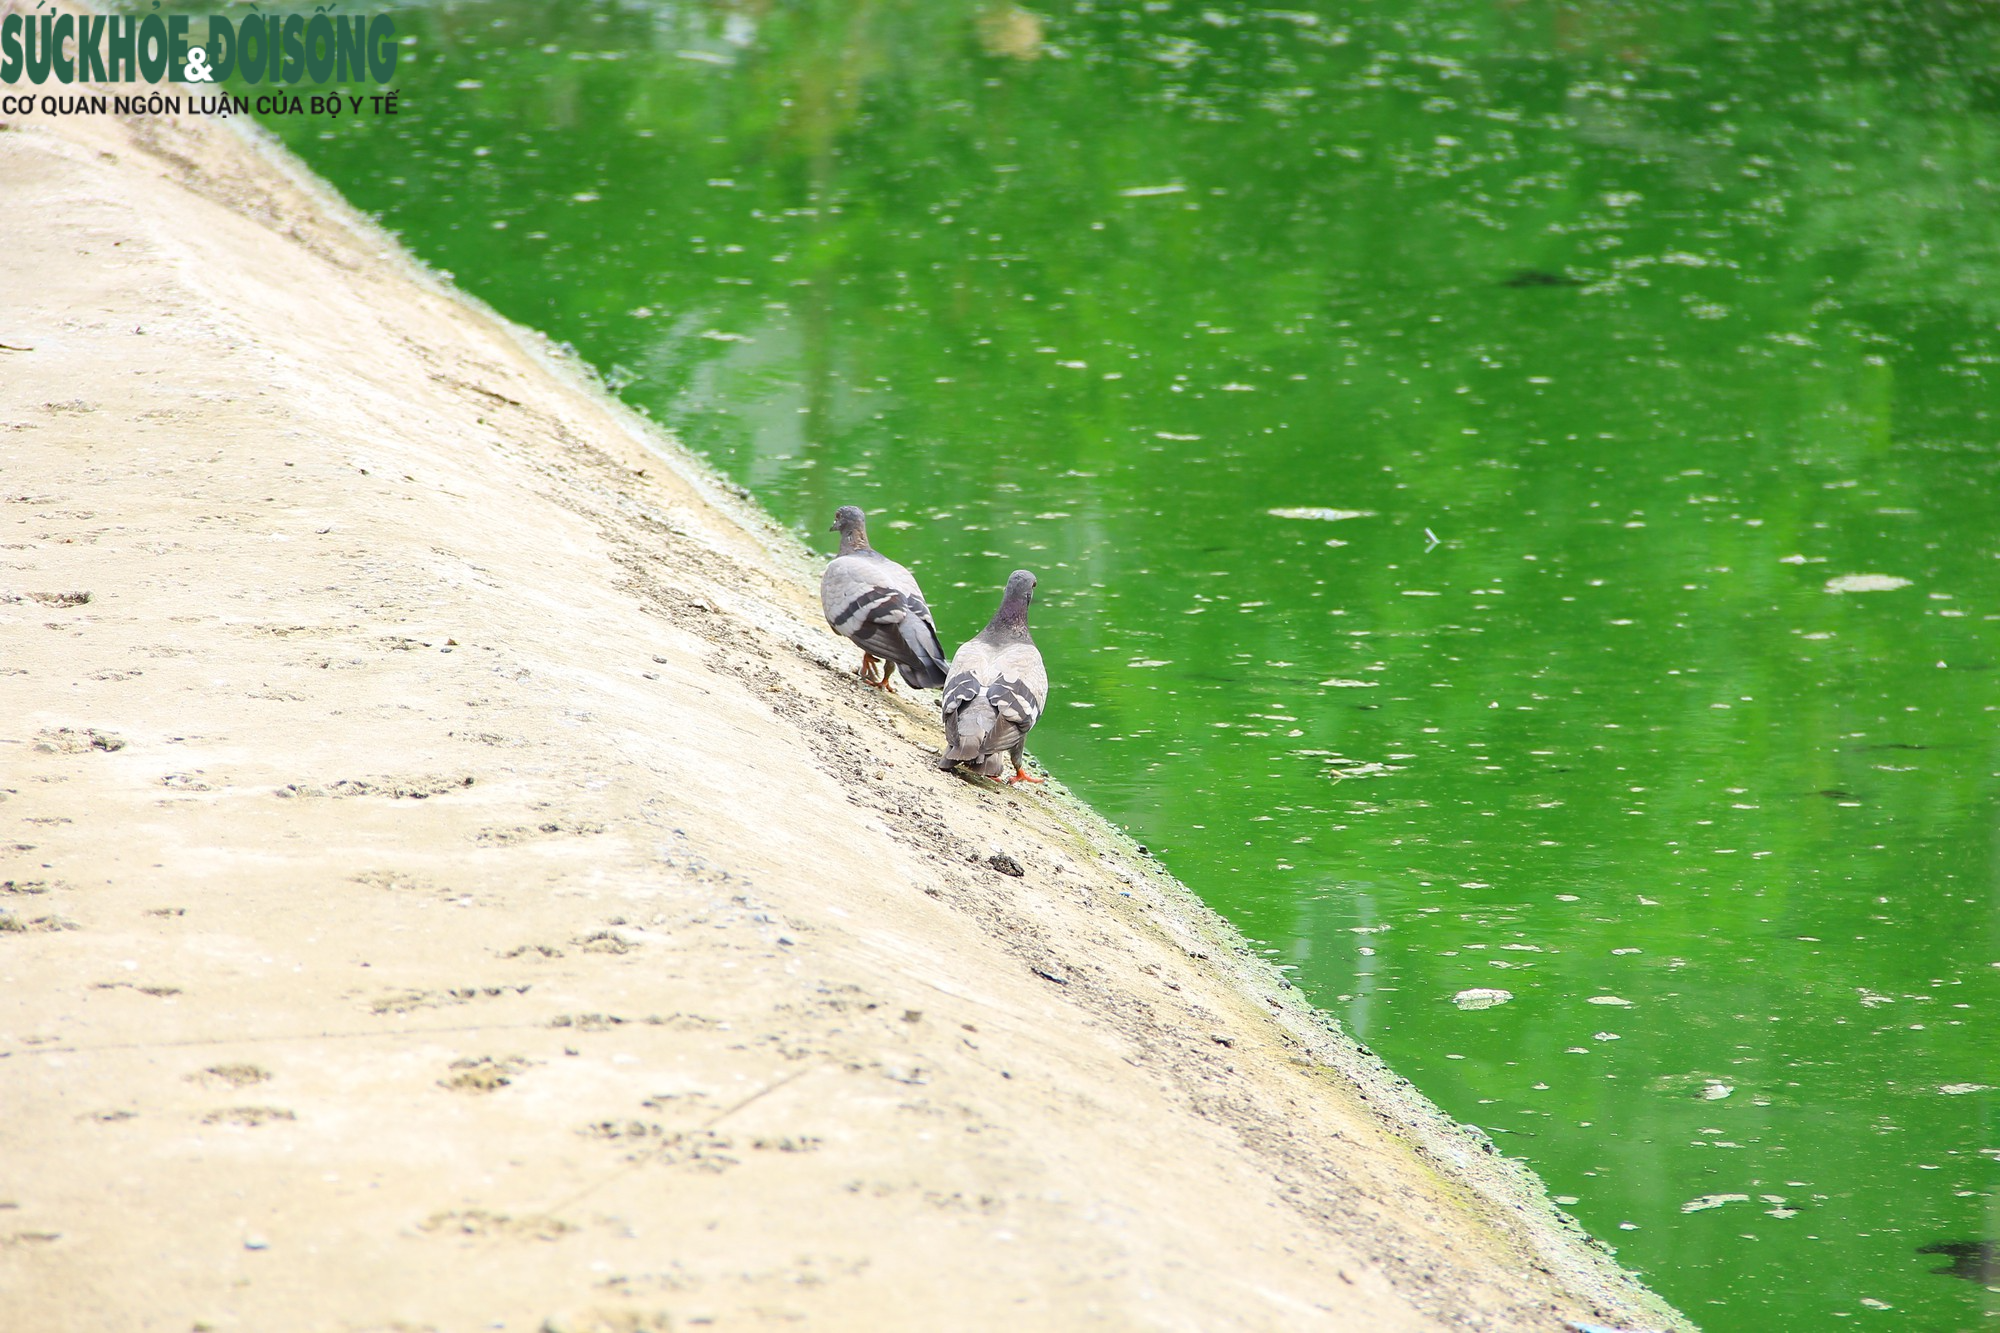 Hồ nước tại trung tâm Hà Nội ô nhiễm, mặt hồ nổi mảng bám, nước bốc mùi - Ảnh 10.